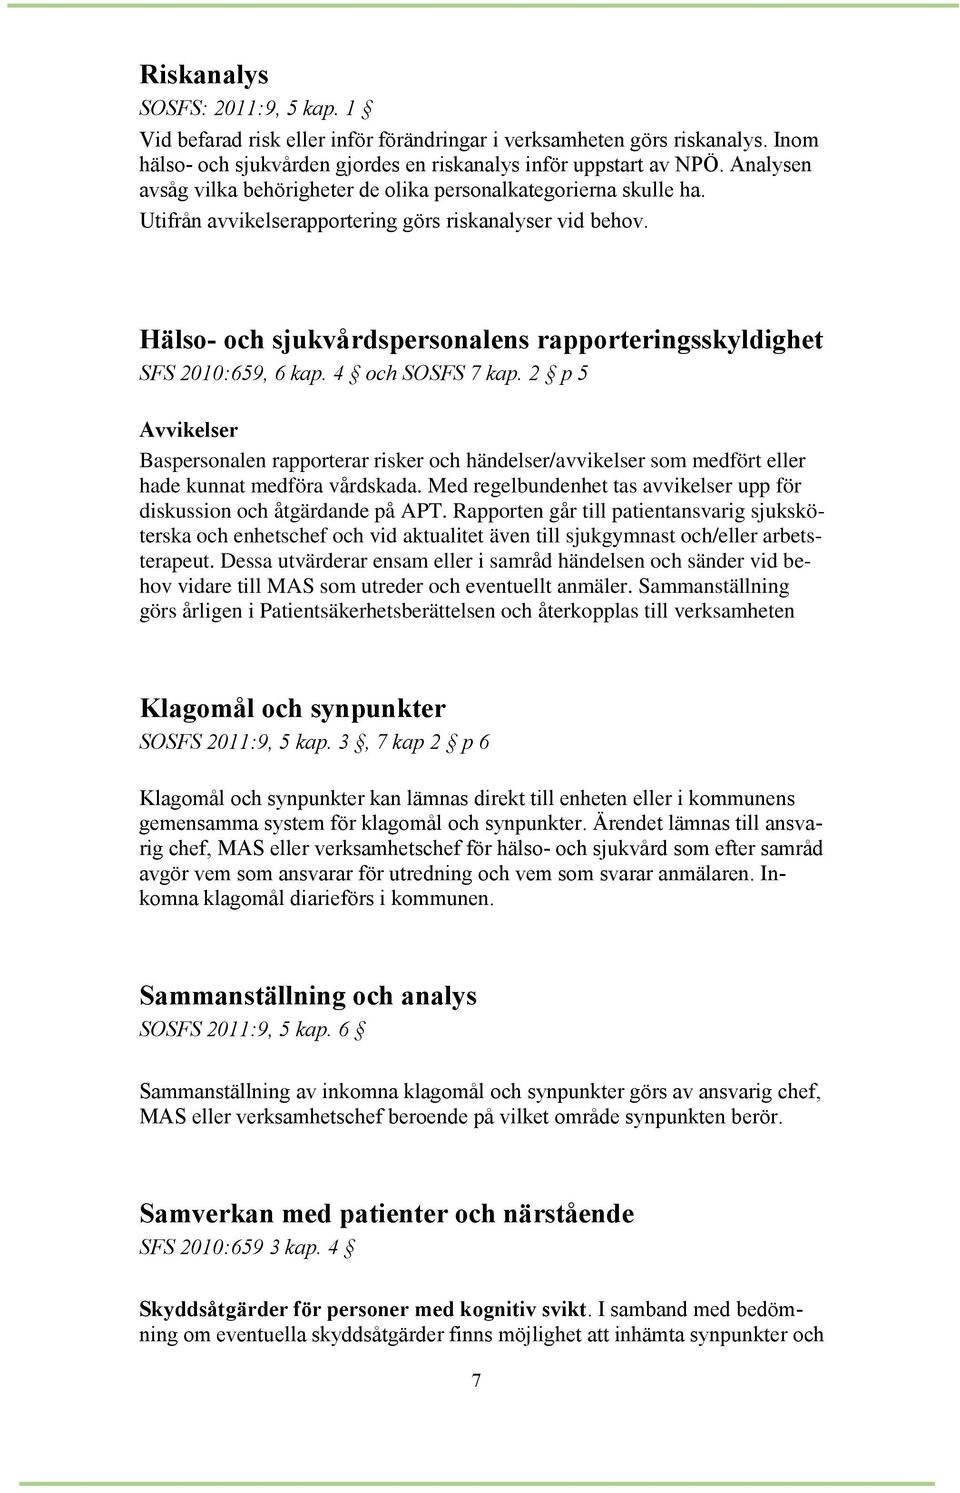 Hälso- och sjukvårdspersonalens rapporteringsskyldighet SFS 2010:659, 6 kap. 4 och SOSFS 7 kap.